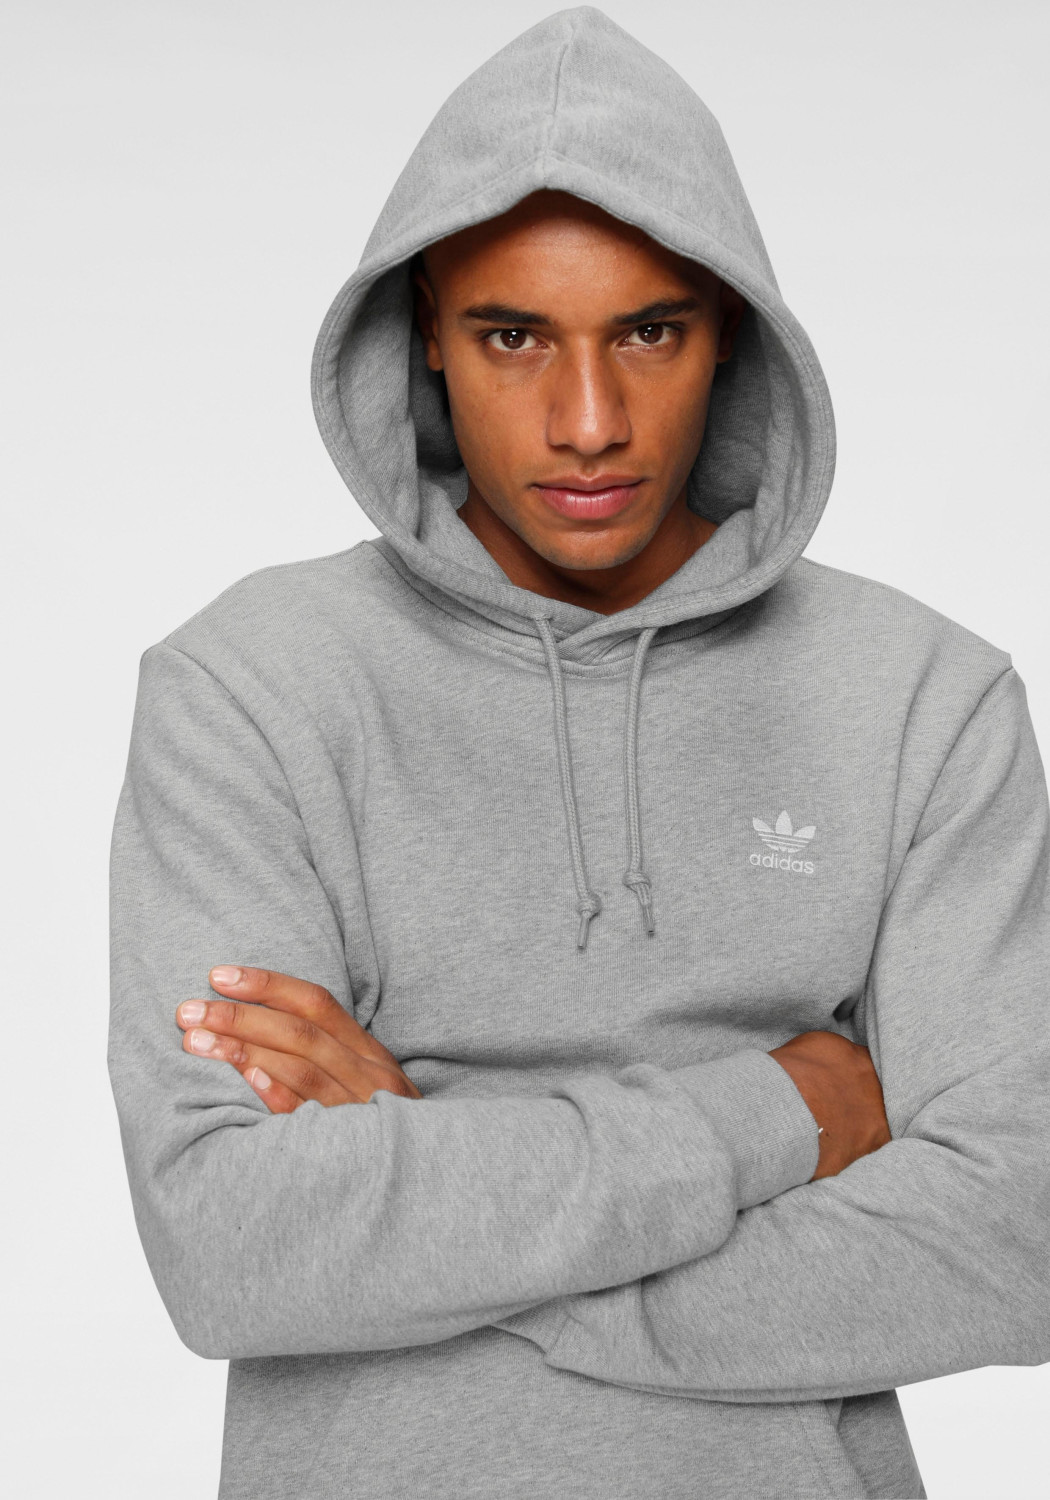 Adidas LOUNGEWEAR Trefoil Essentials Hoodie medium grey heather ab 30,00 €  | Preisvergleich bei